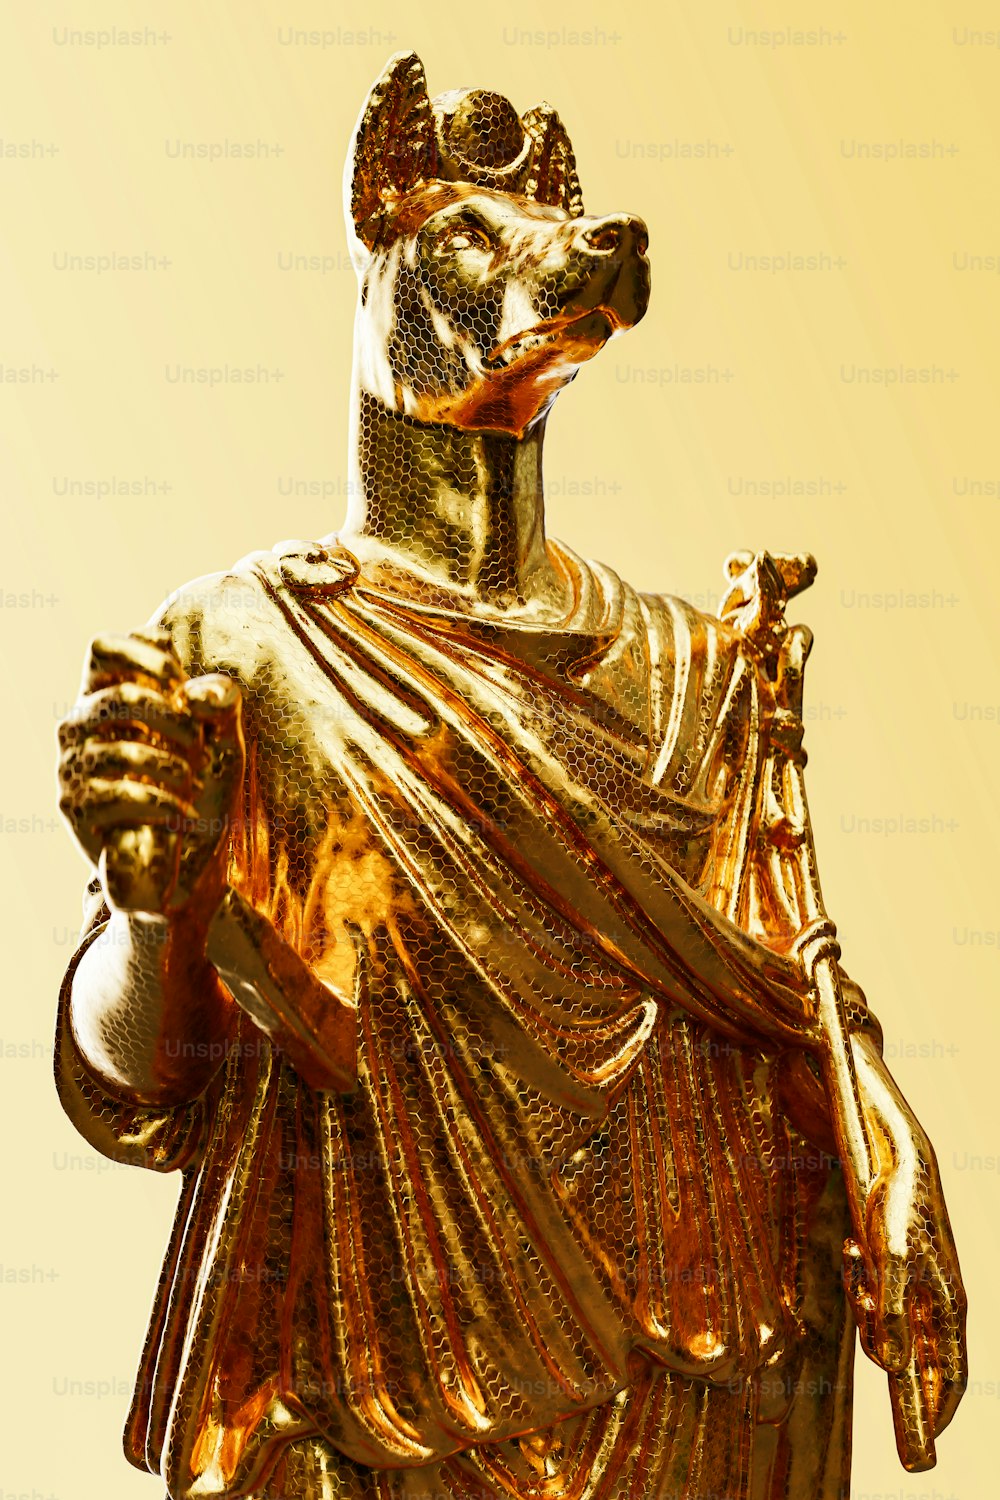 머리에 왕관을 쓴 남자의 황금 동상